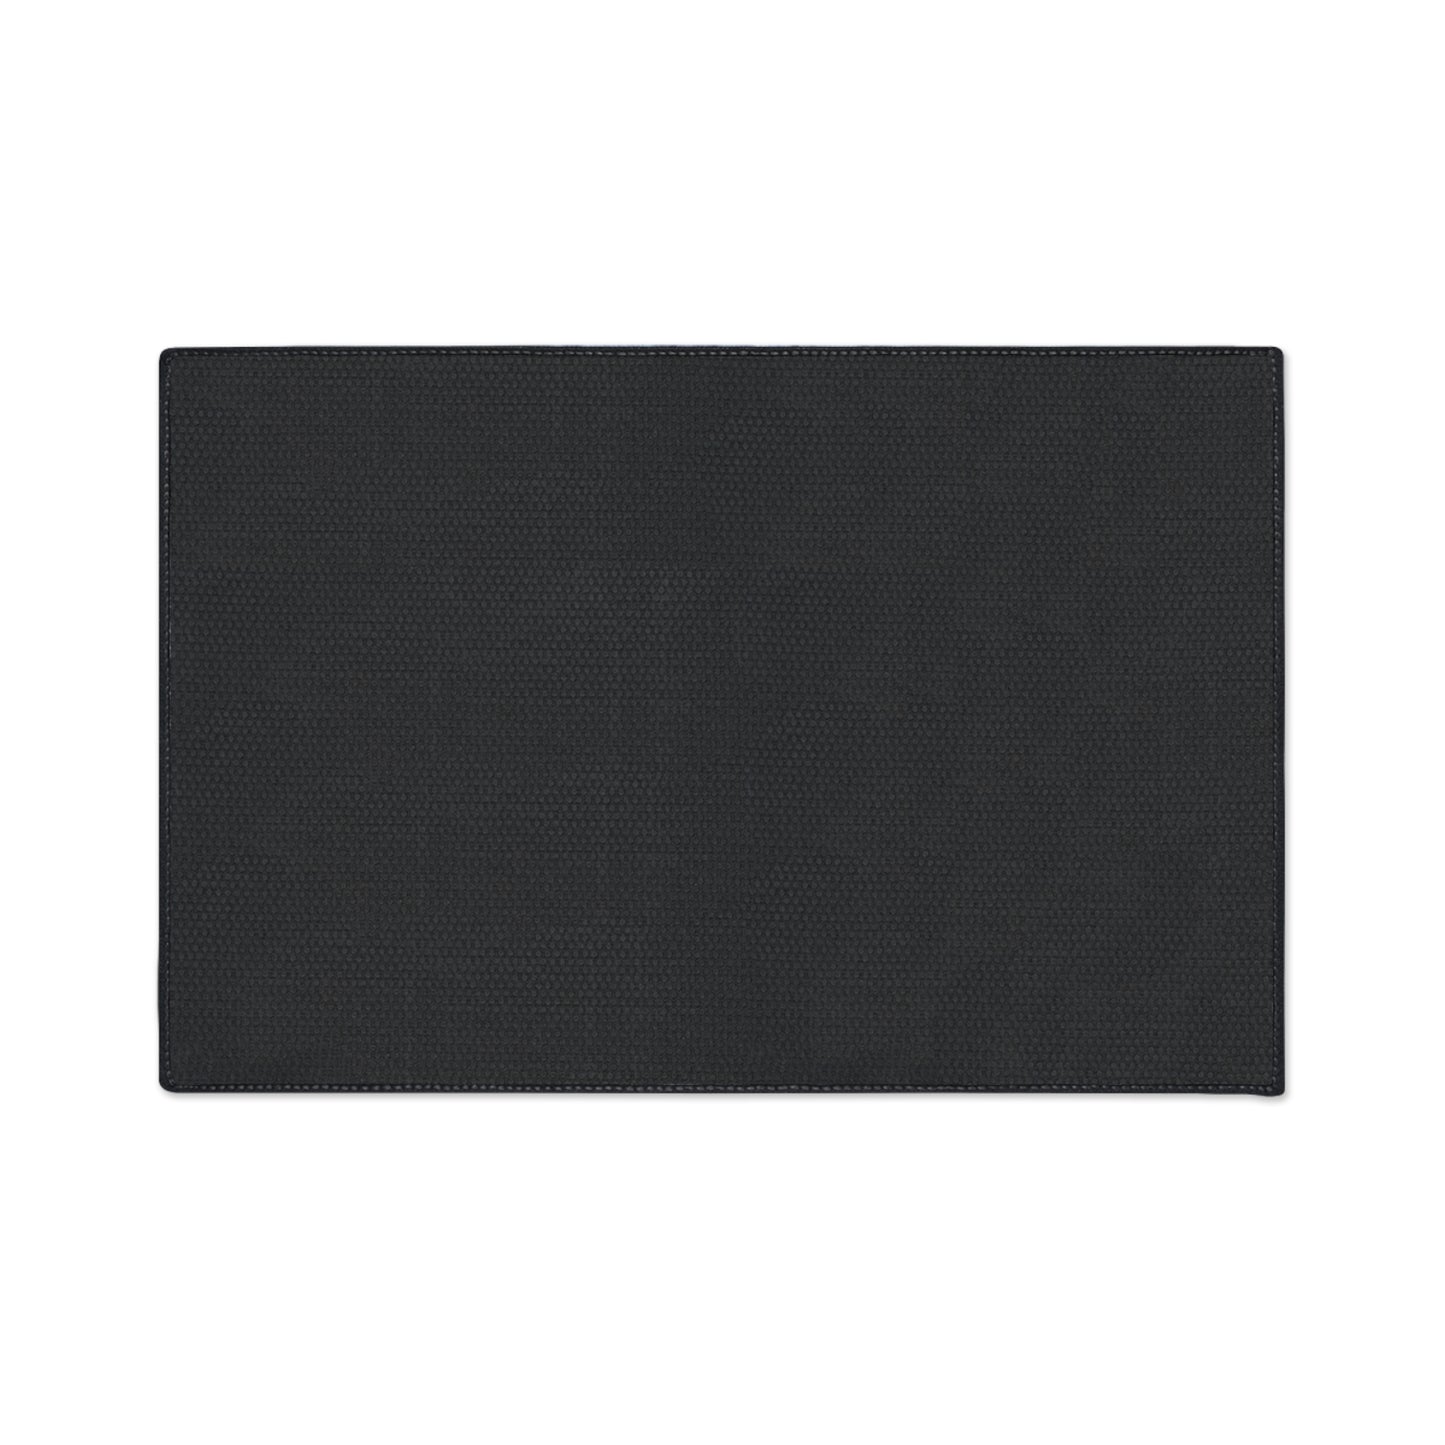 Heavy Duty Floor Mat - Black Cat Floor Mat, Show Your Black Cat Love With This Non-Slip Heavy Duty Floor Mat